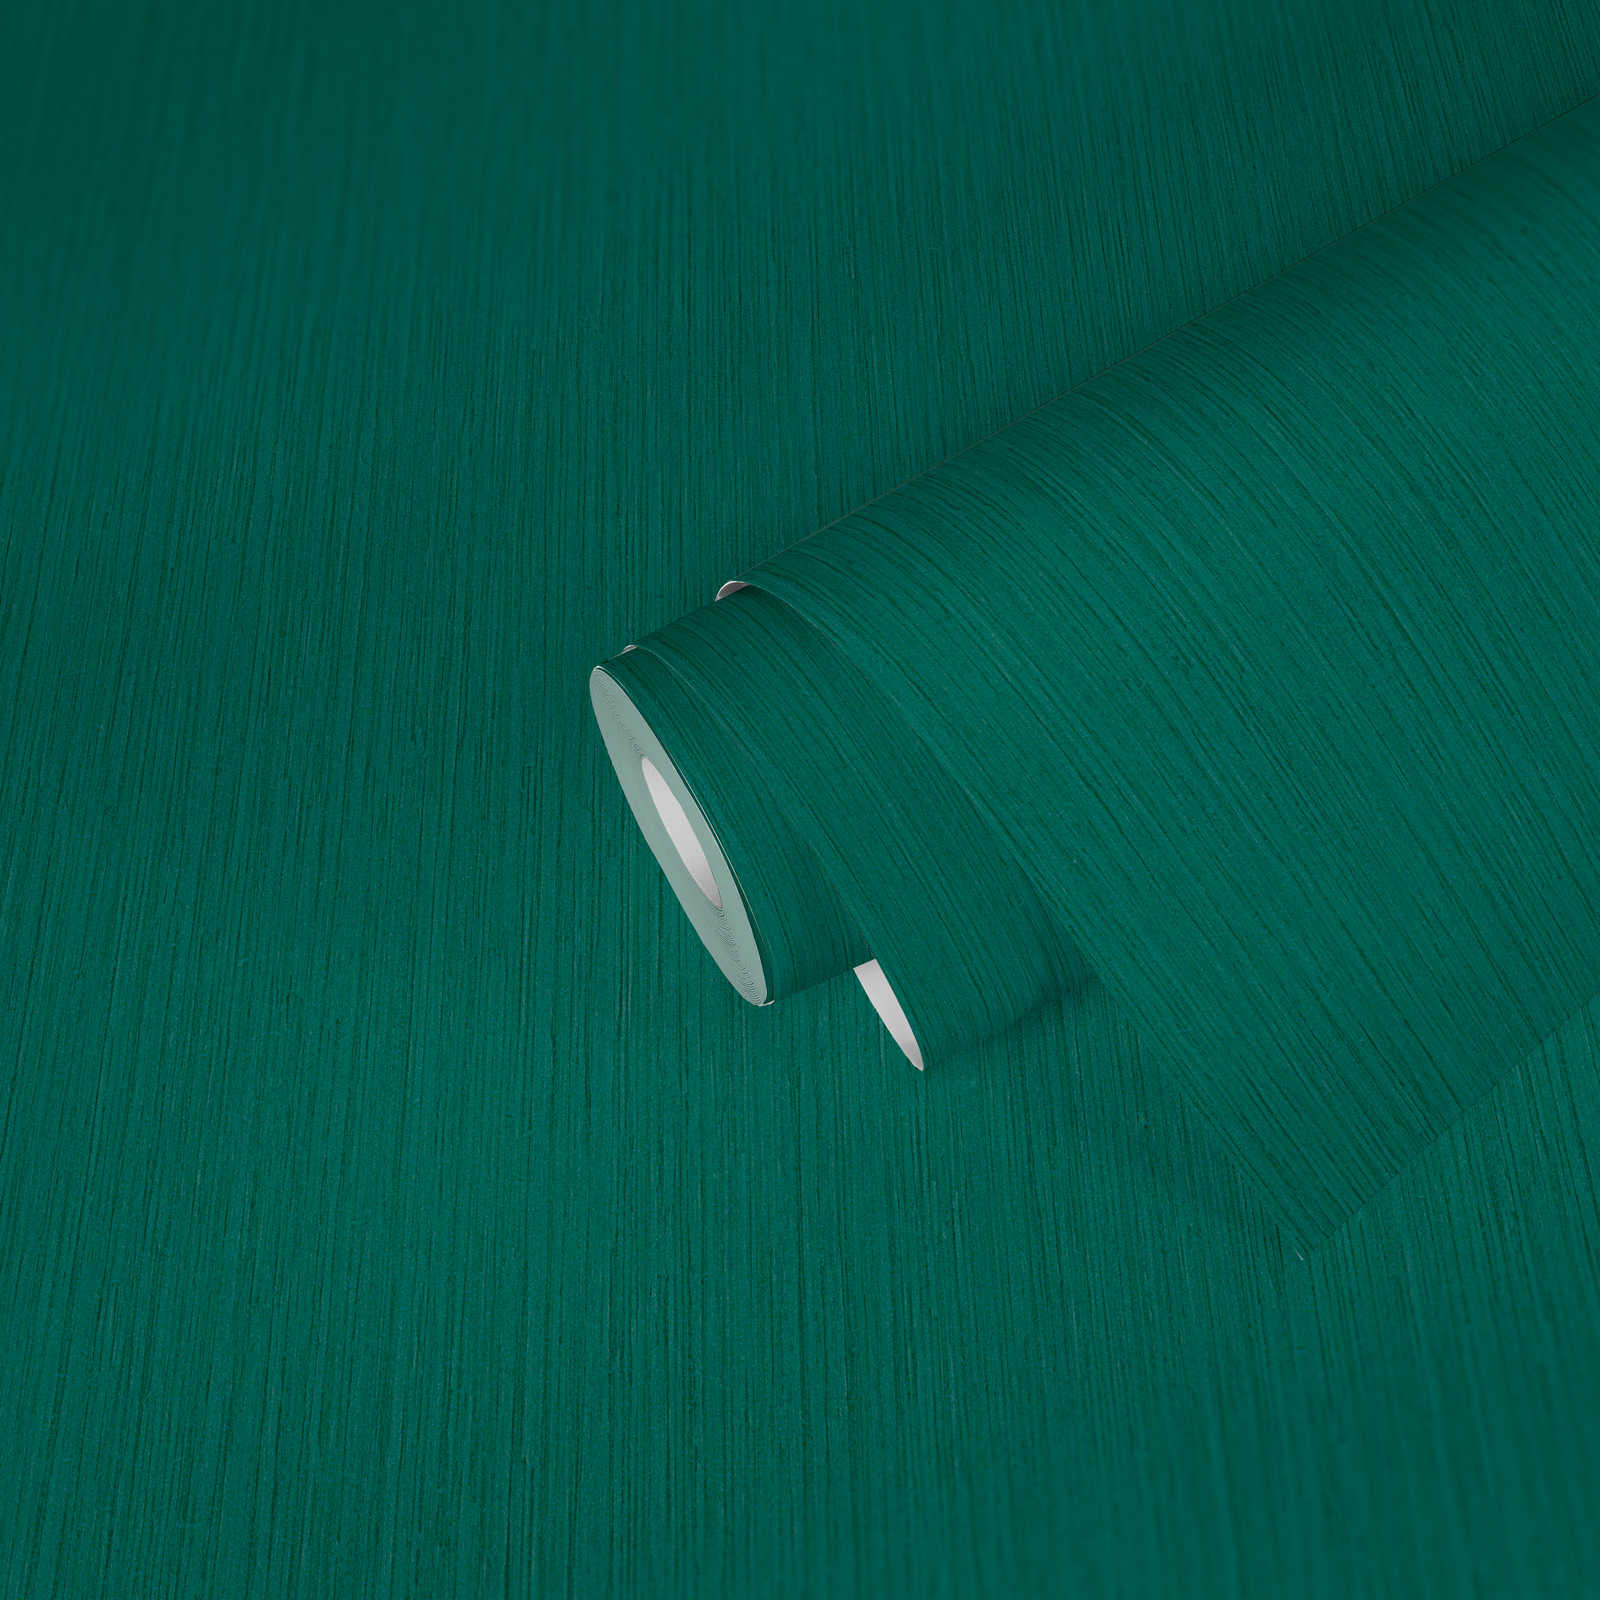             papier peint vert foncé intissé couleur chinée uni
        